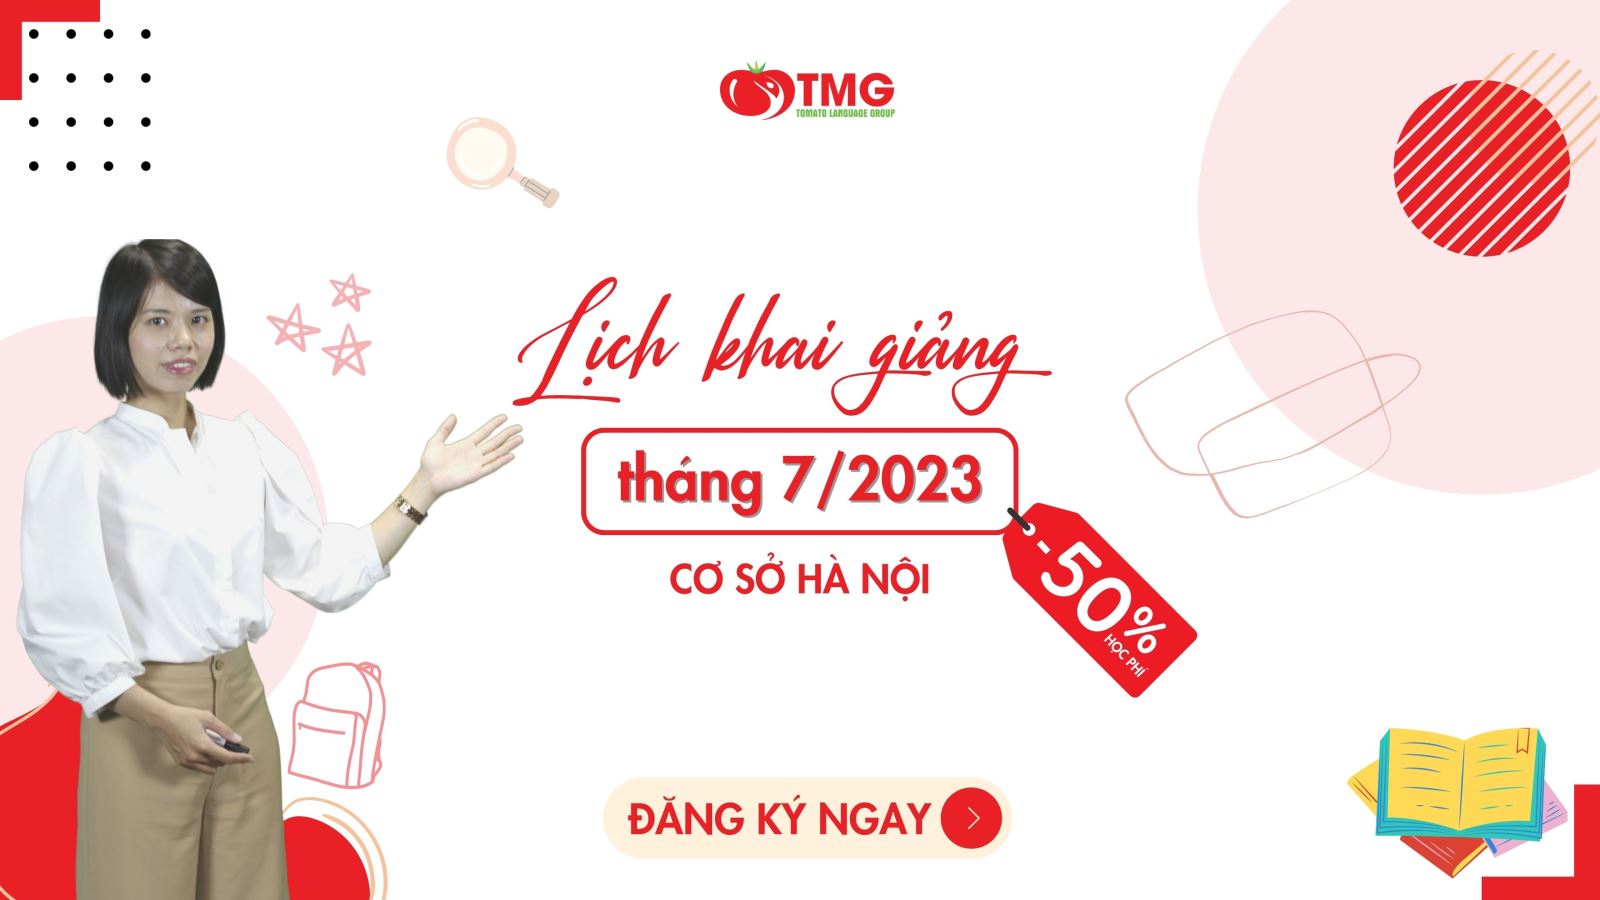 Lịch khai giảng tháng 7/2023 Trung tâm ngoại ngữ Tomato cơ sở Hà Nội 